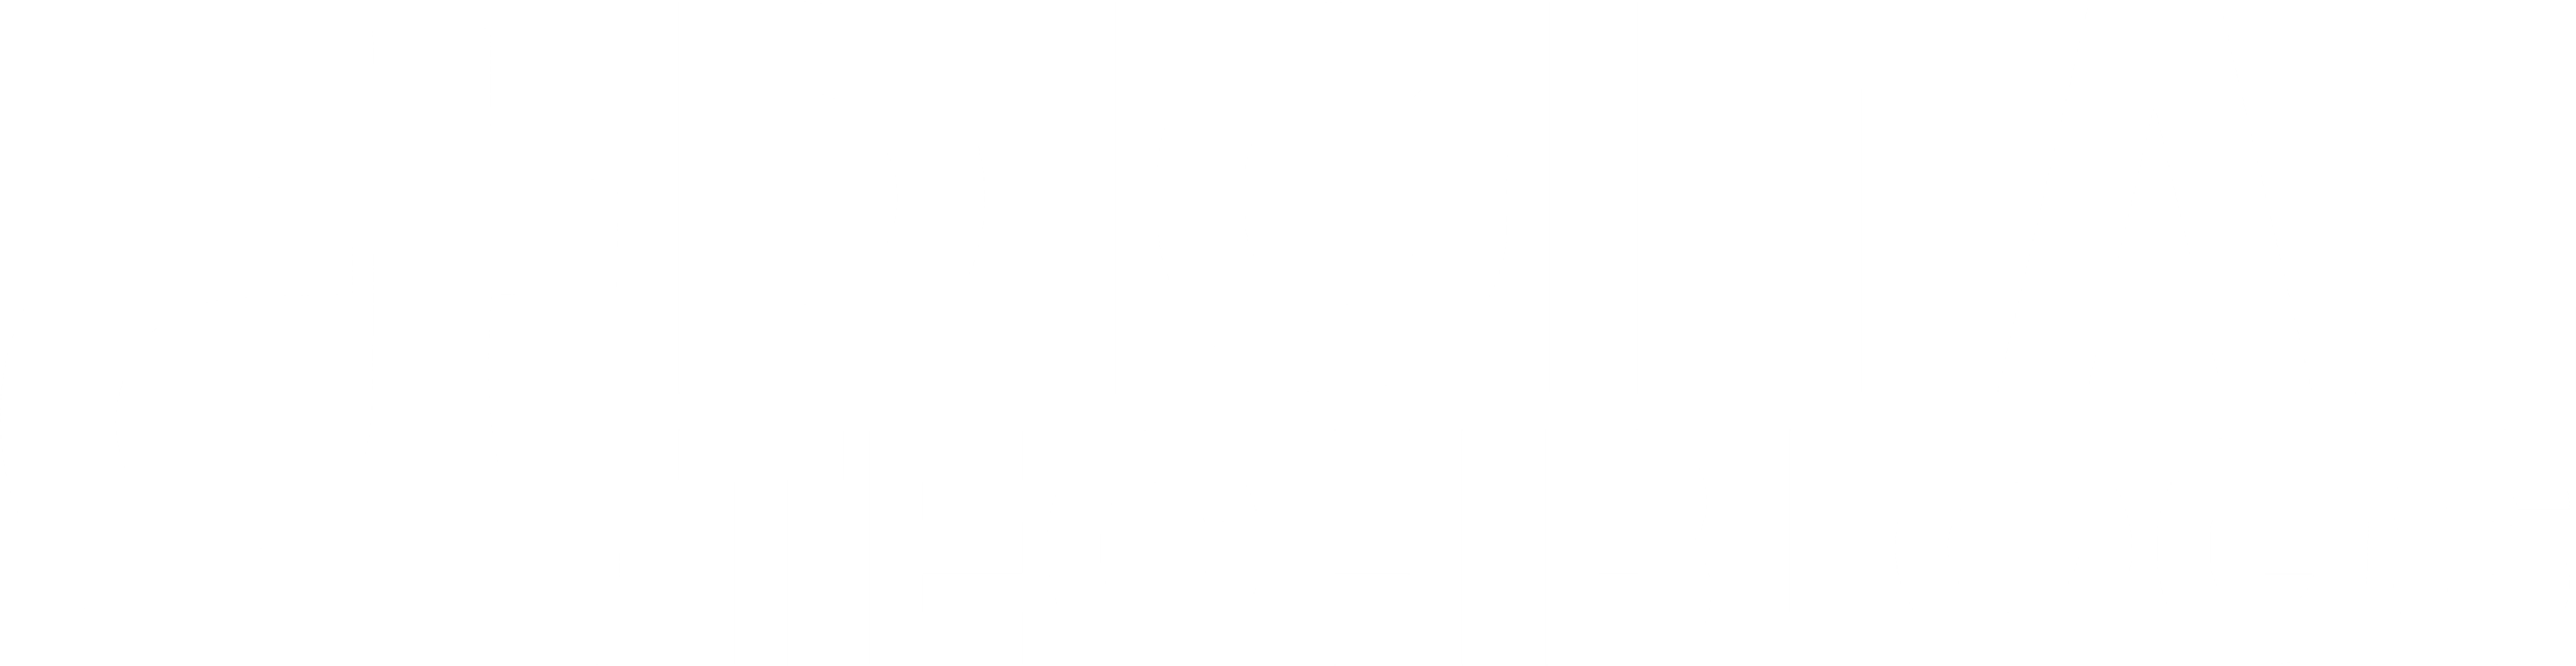 Digital Tech Blogs